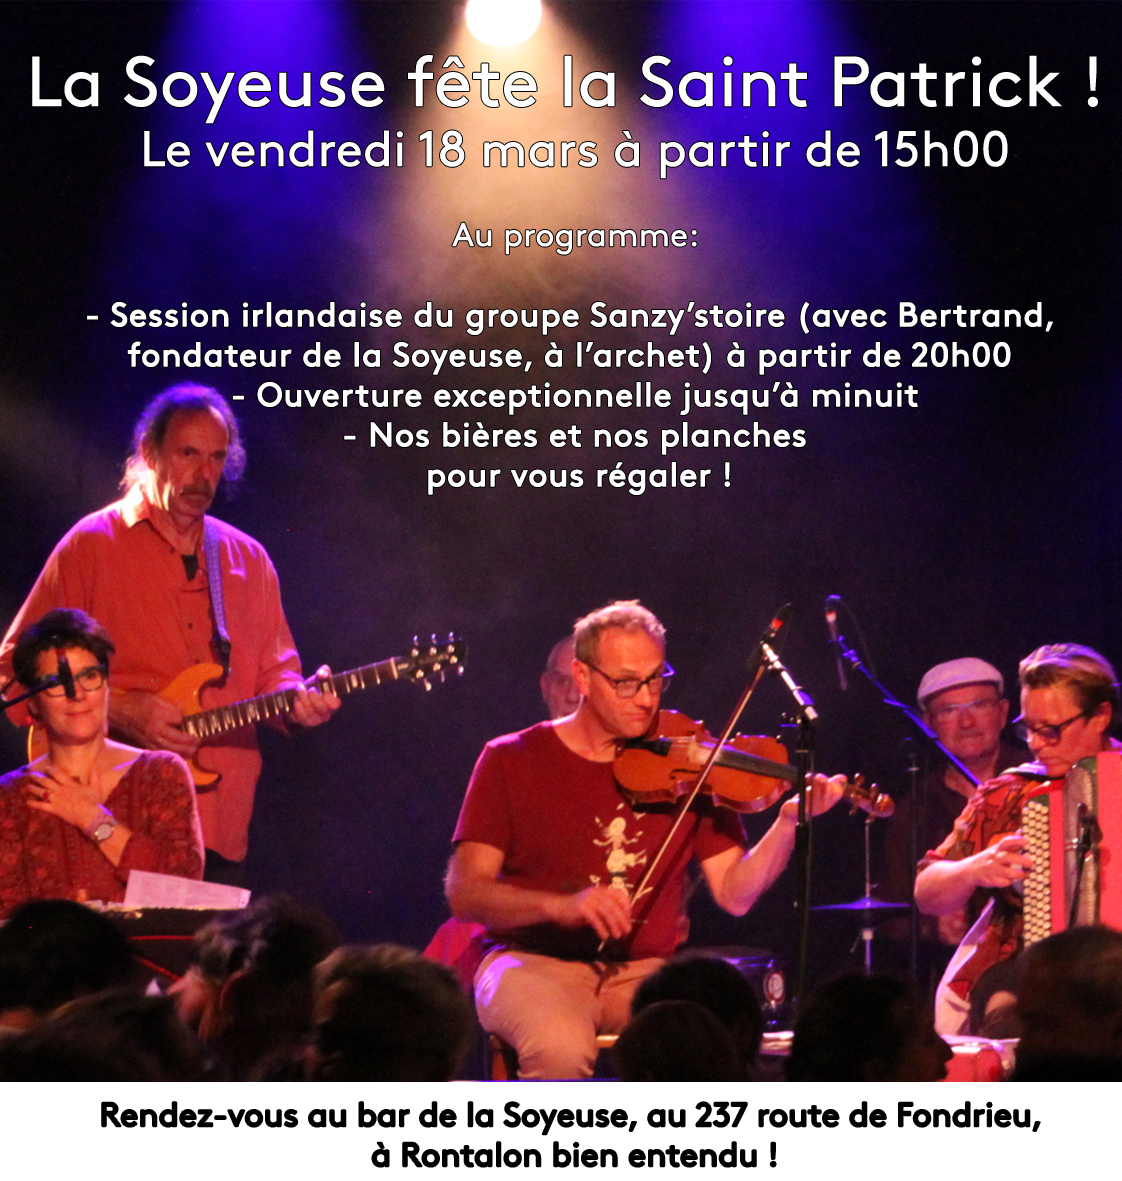 La Soyeuse fête la Saint patrick le 18 mars 2022 !